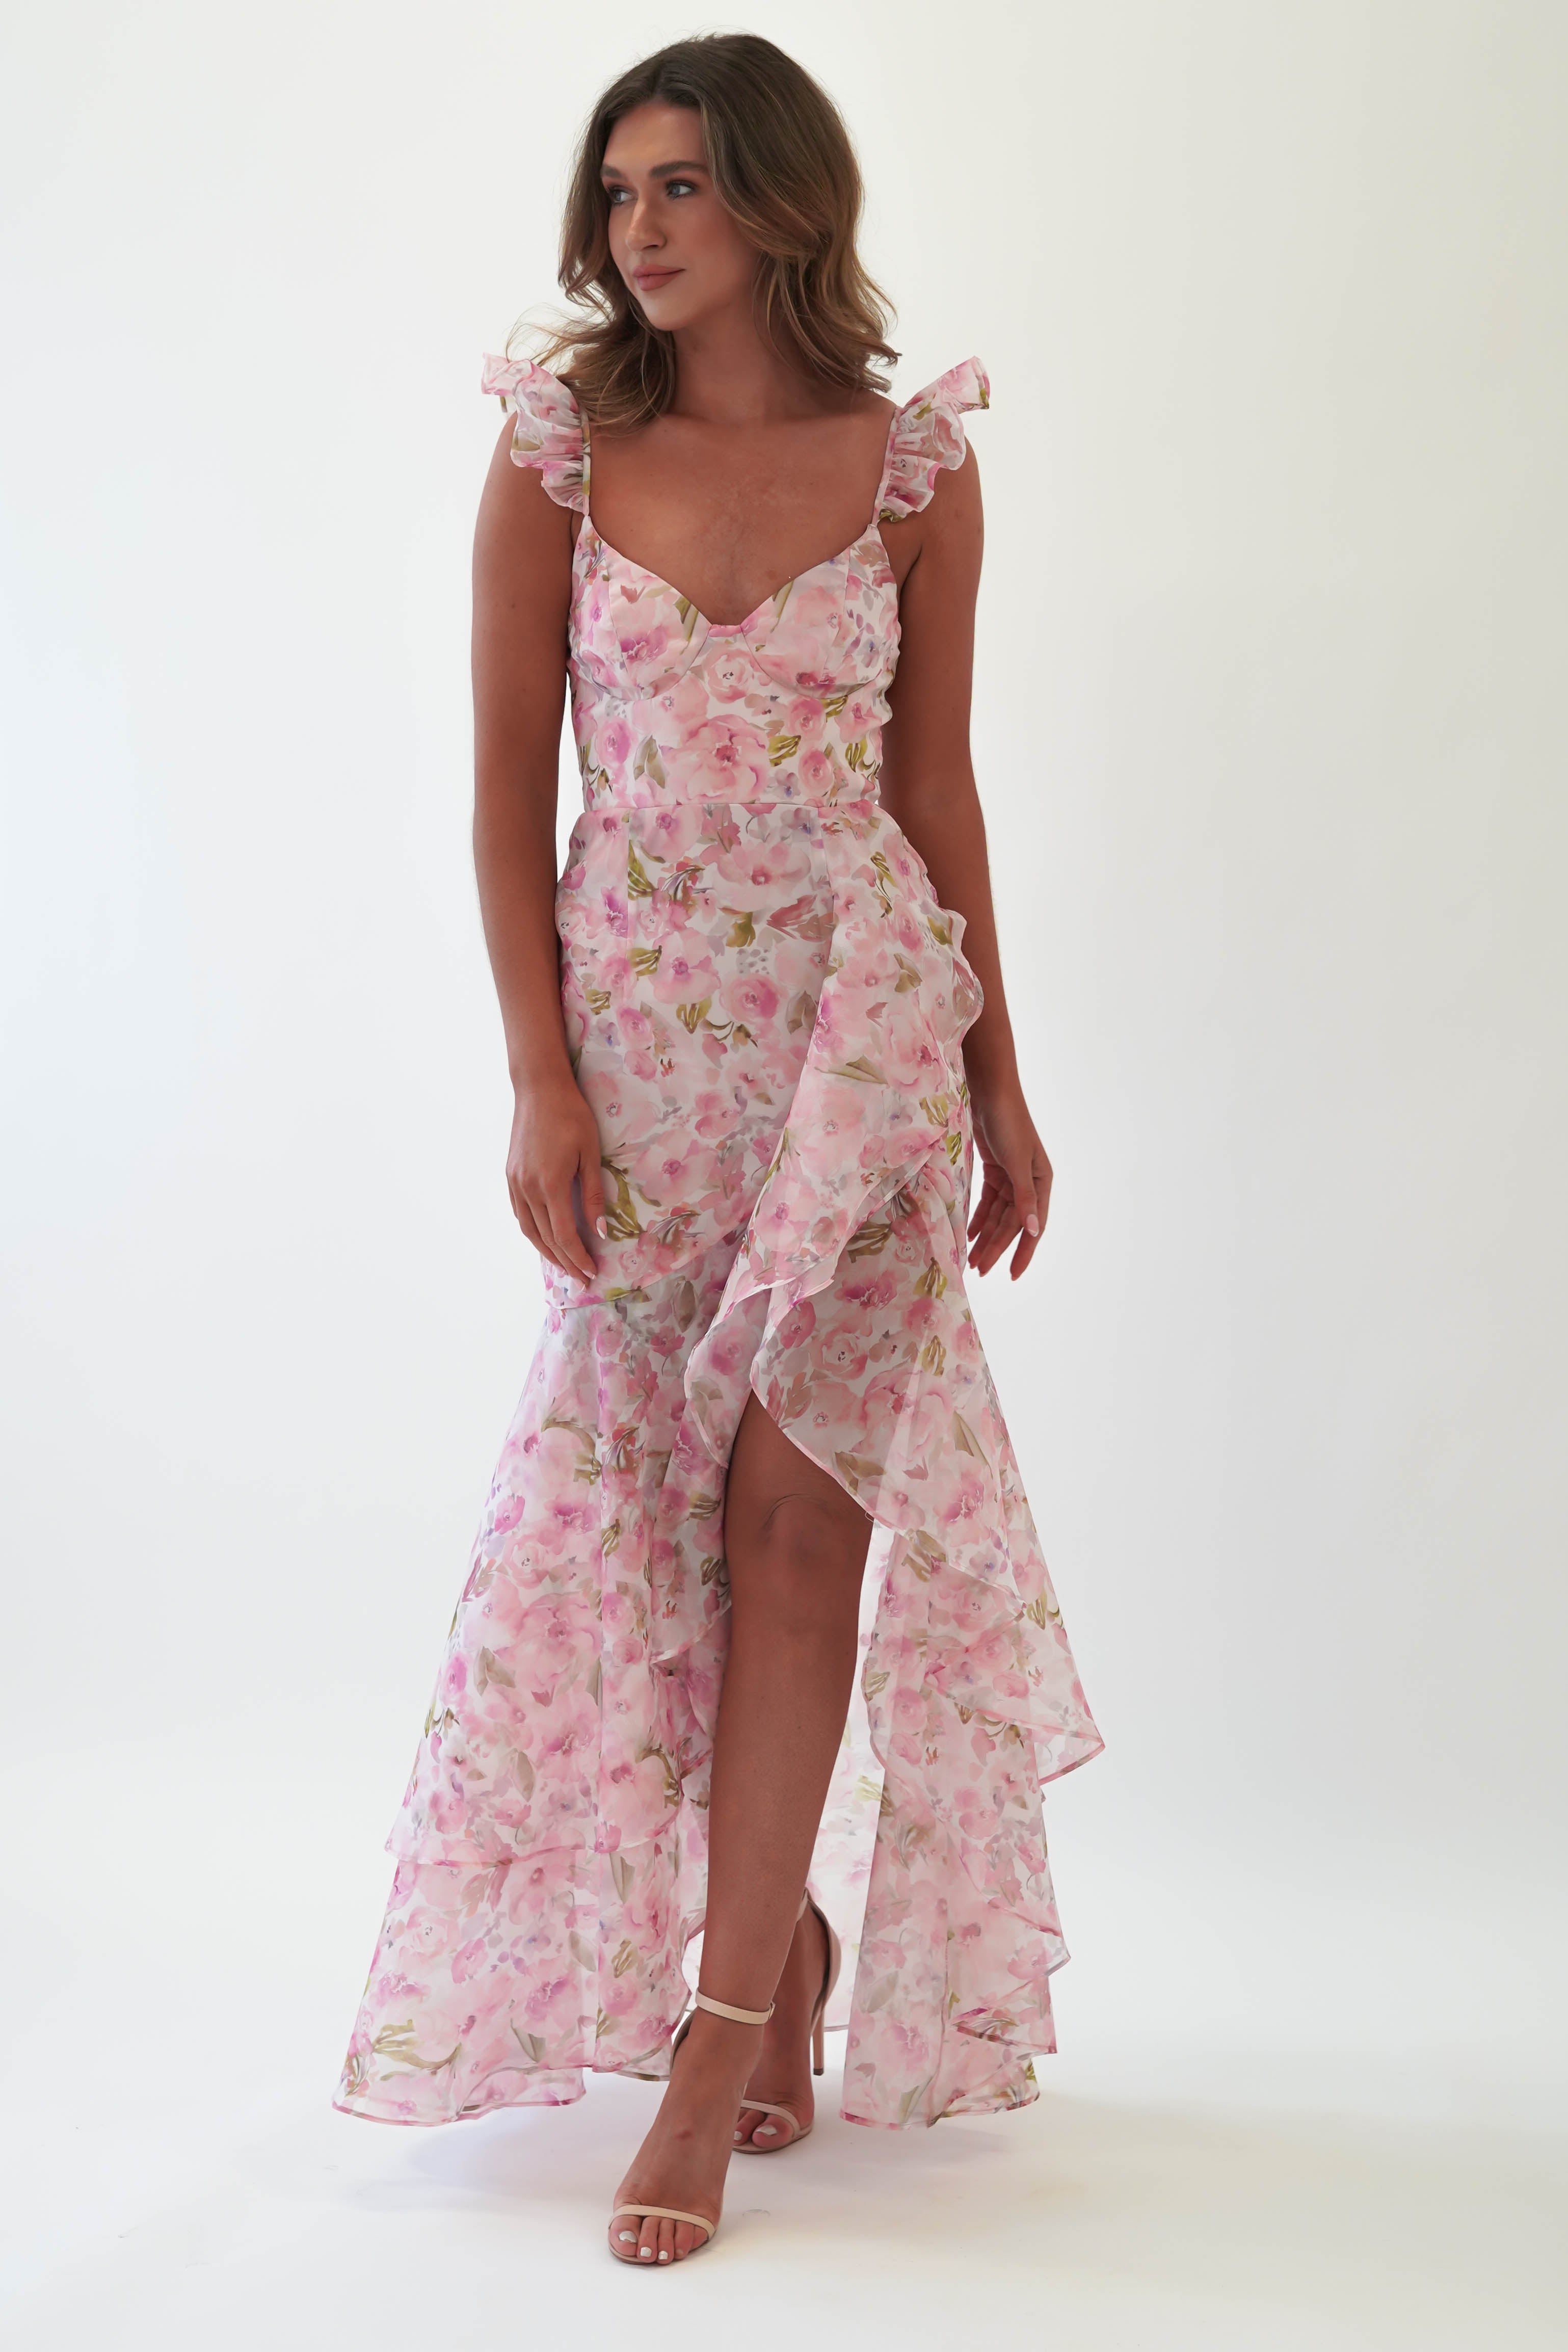 done-mf22302-pink-floral-print-frill-maxi-pink-floral-maniju-dresses-52607847235925.jpg